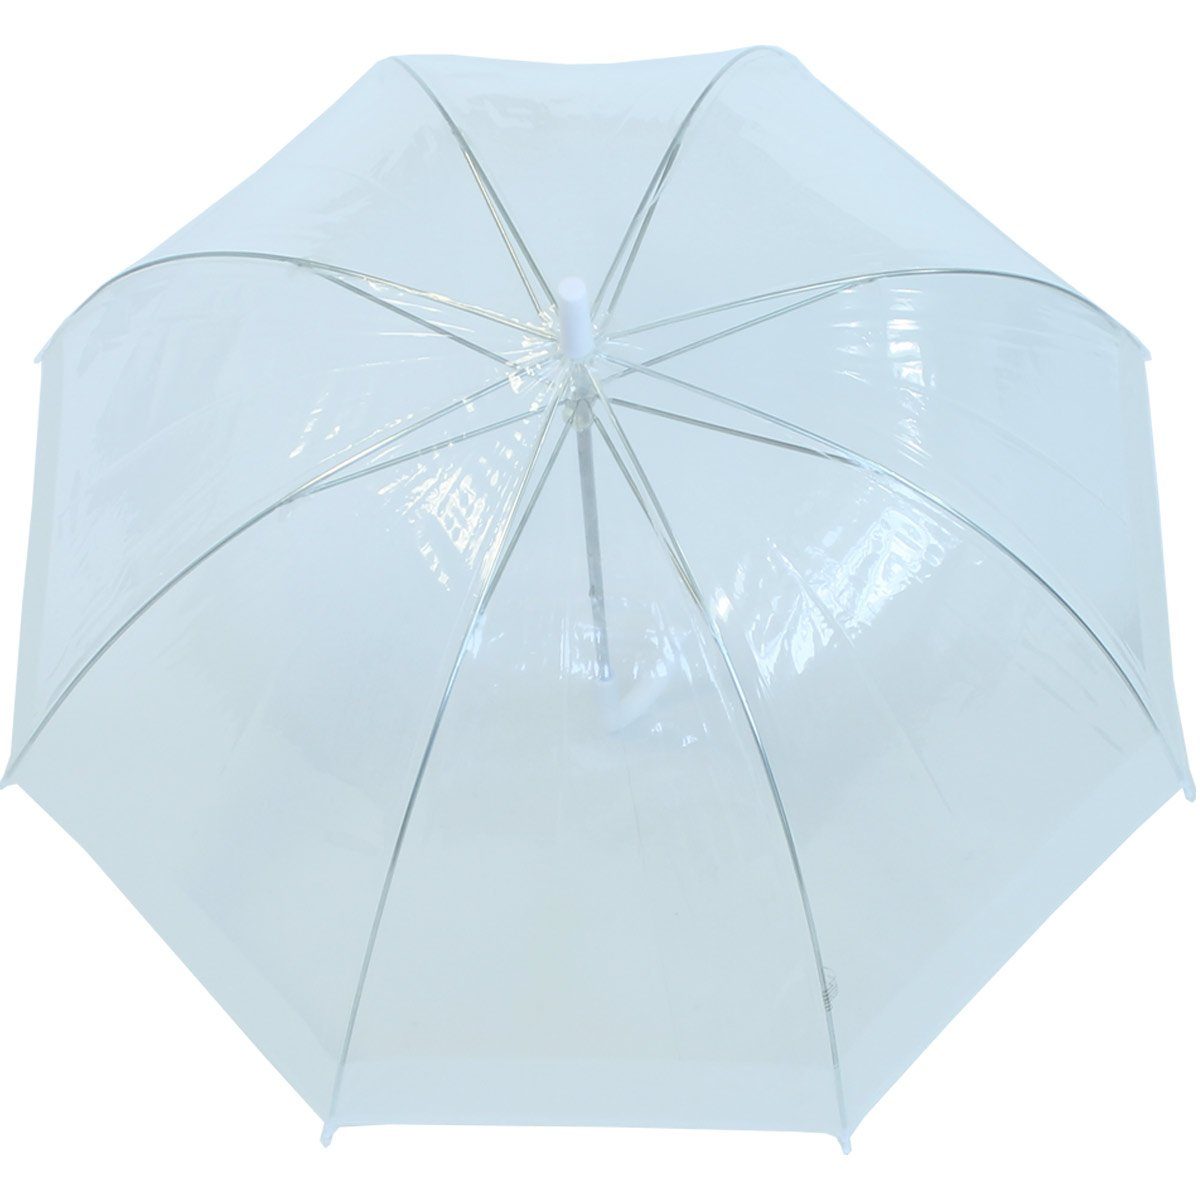 Borte, Langregenschirm durchsichtig transparent mit RAIN durchsichtig HAPPY Glockenschirm